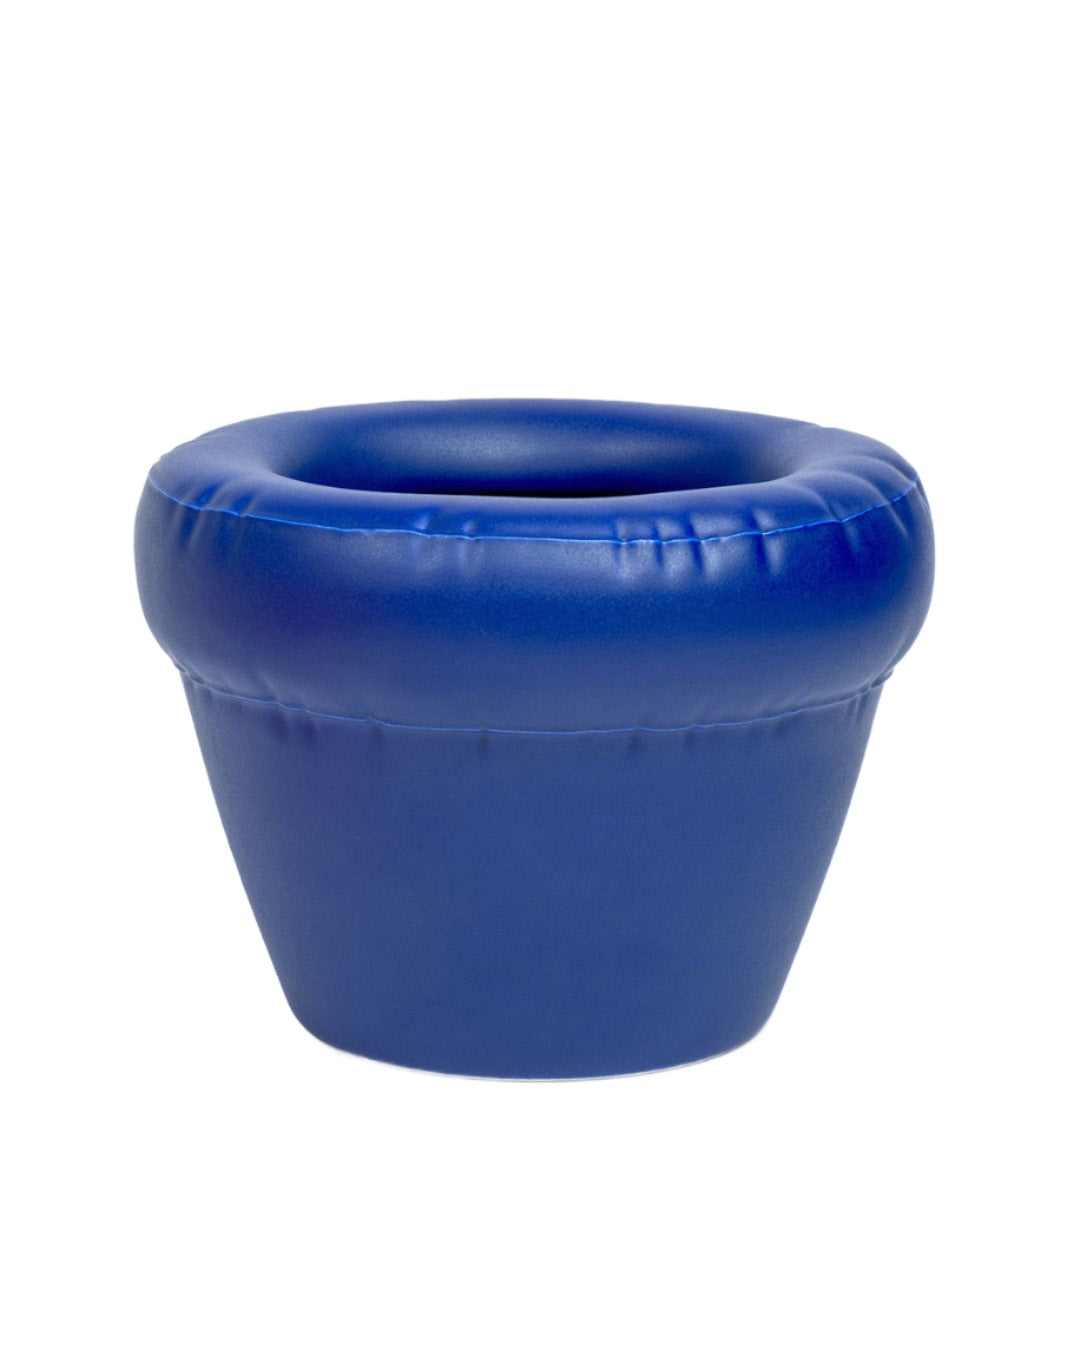 Home-Studyo - Handamde ceramic vase